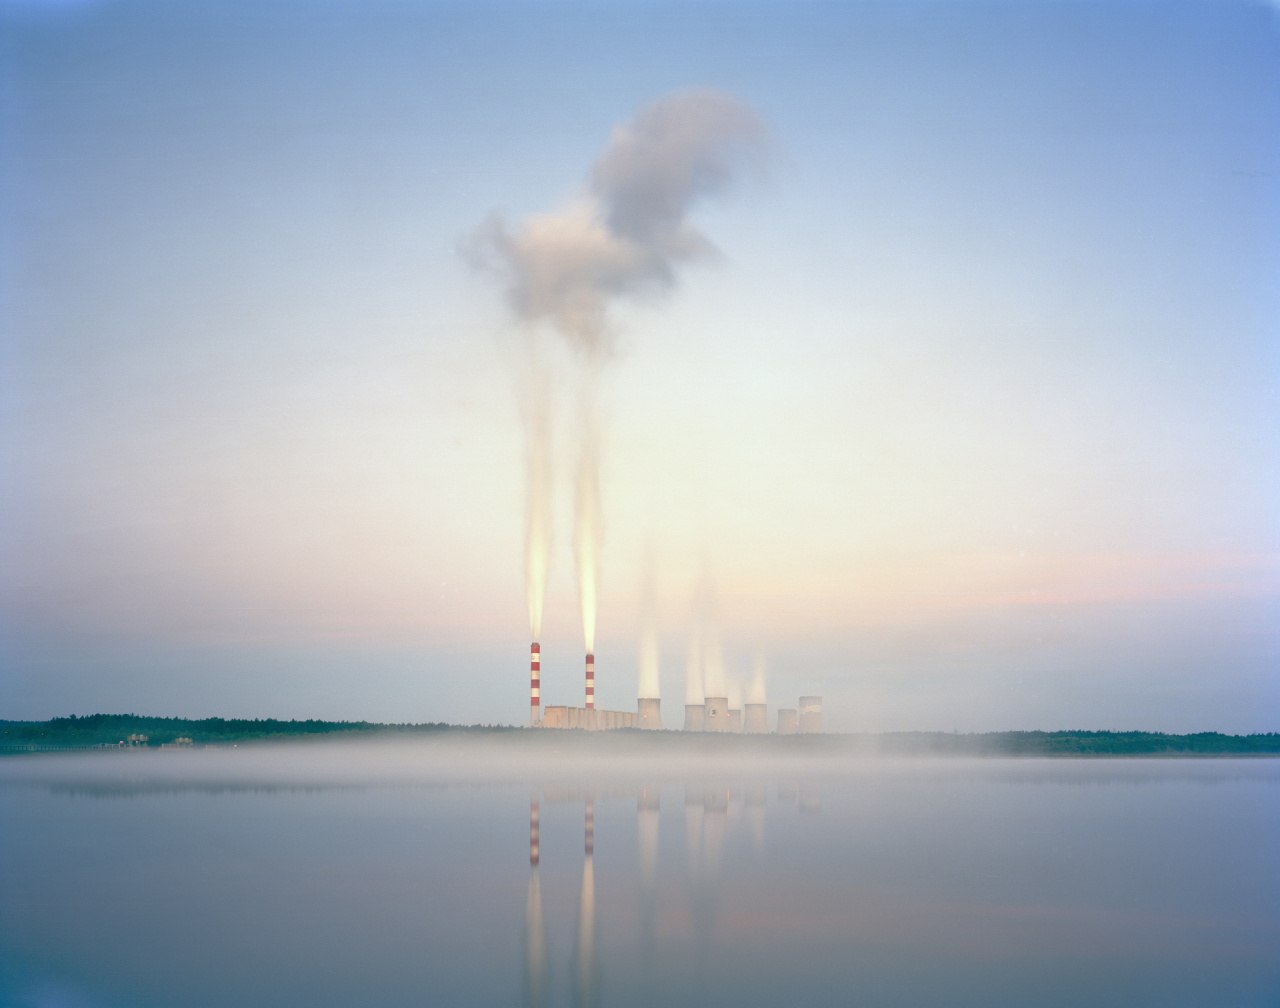 tylko-5-proc-elektrowni-emituje-75-proc-dwutlenku-wegla-zwiazanego-z-produkcja-energii-na-pierwszym-miejscu-polska-fot-getty-images